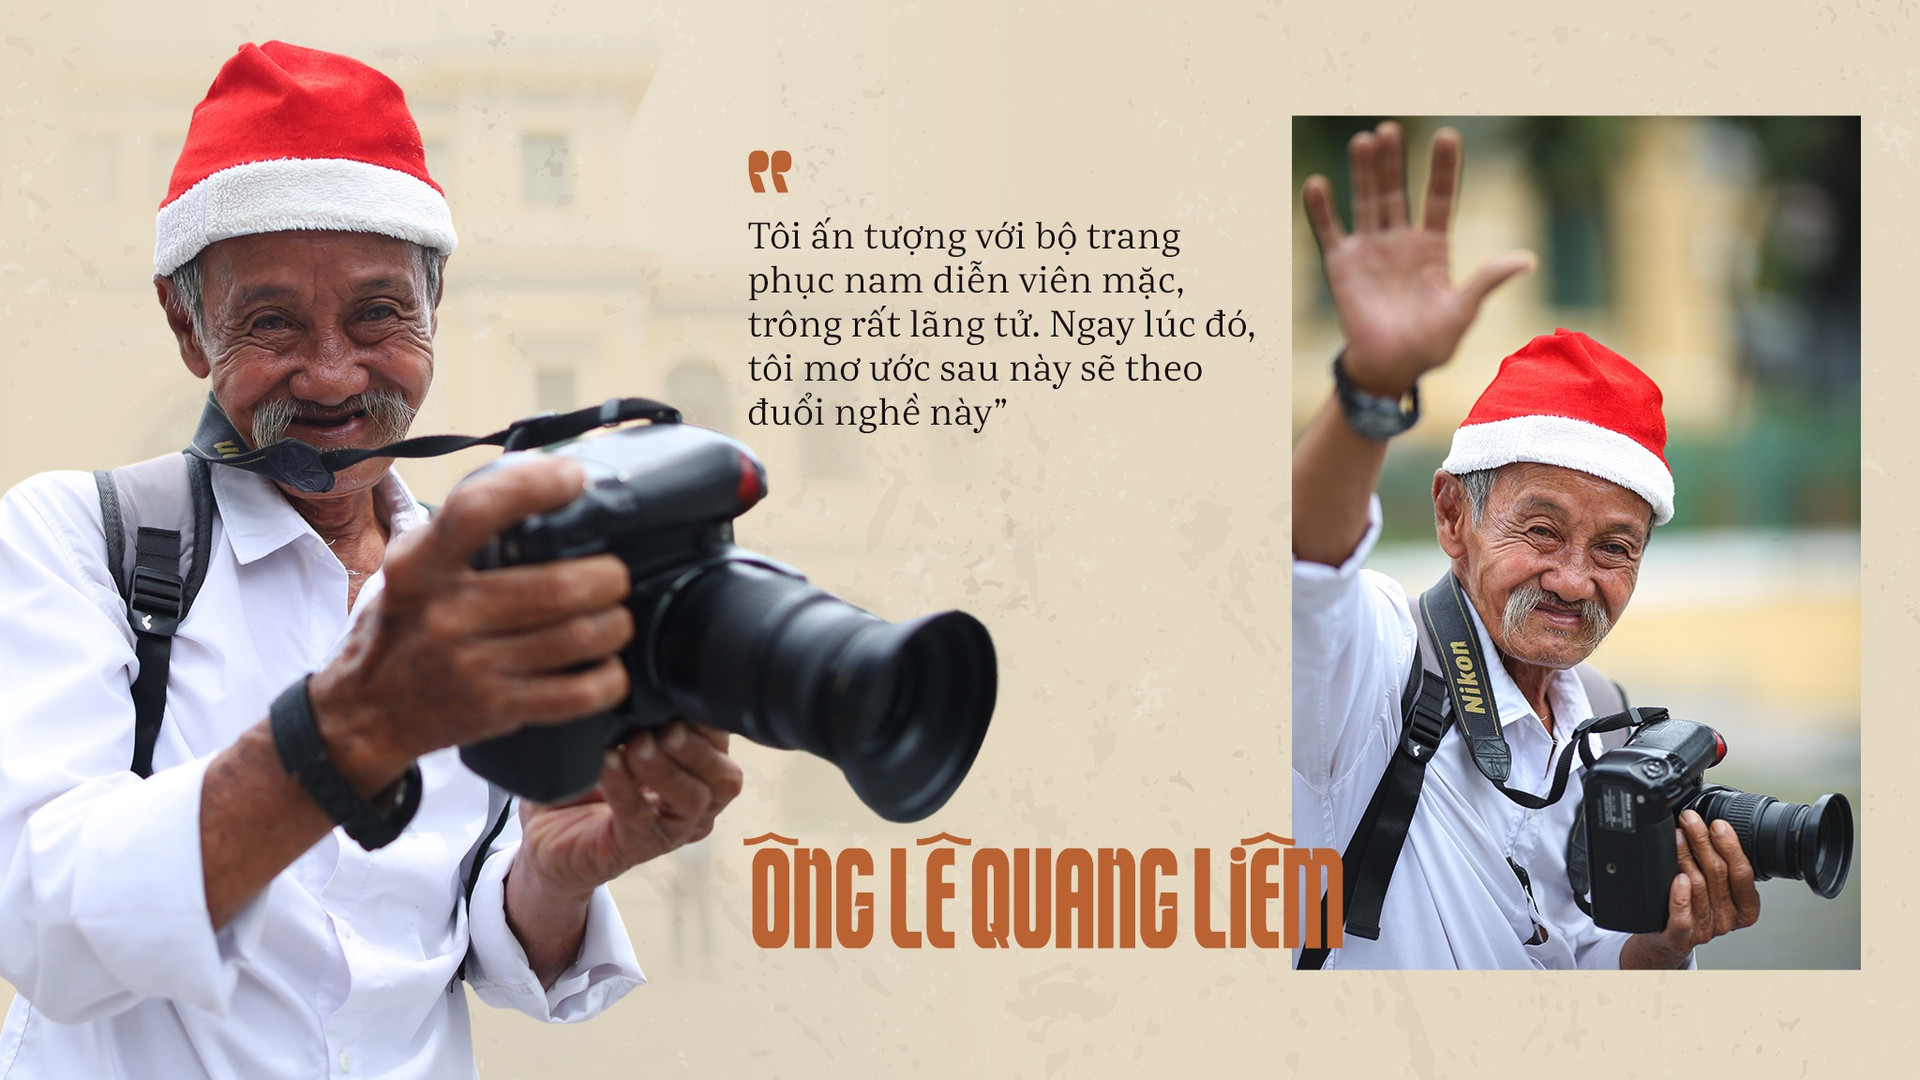 Tình người Sài Gòn làm sống lại ông thợ chụp hình già đìu hiu - 6